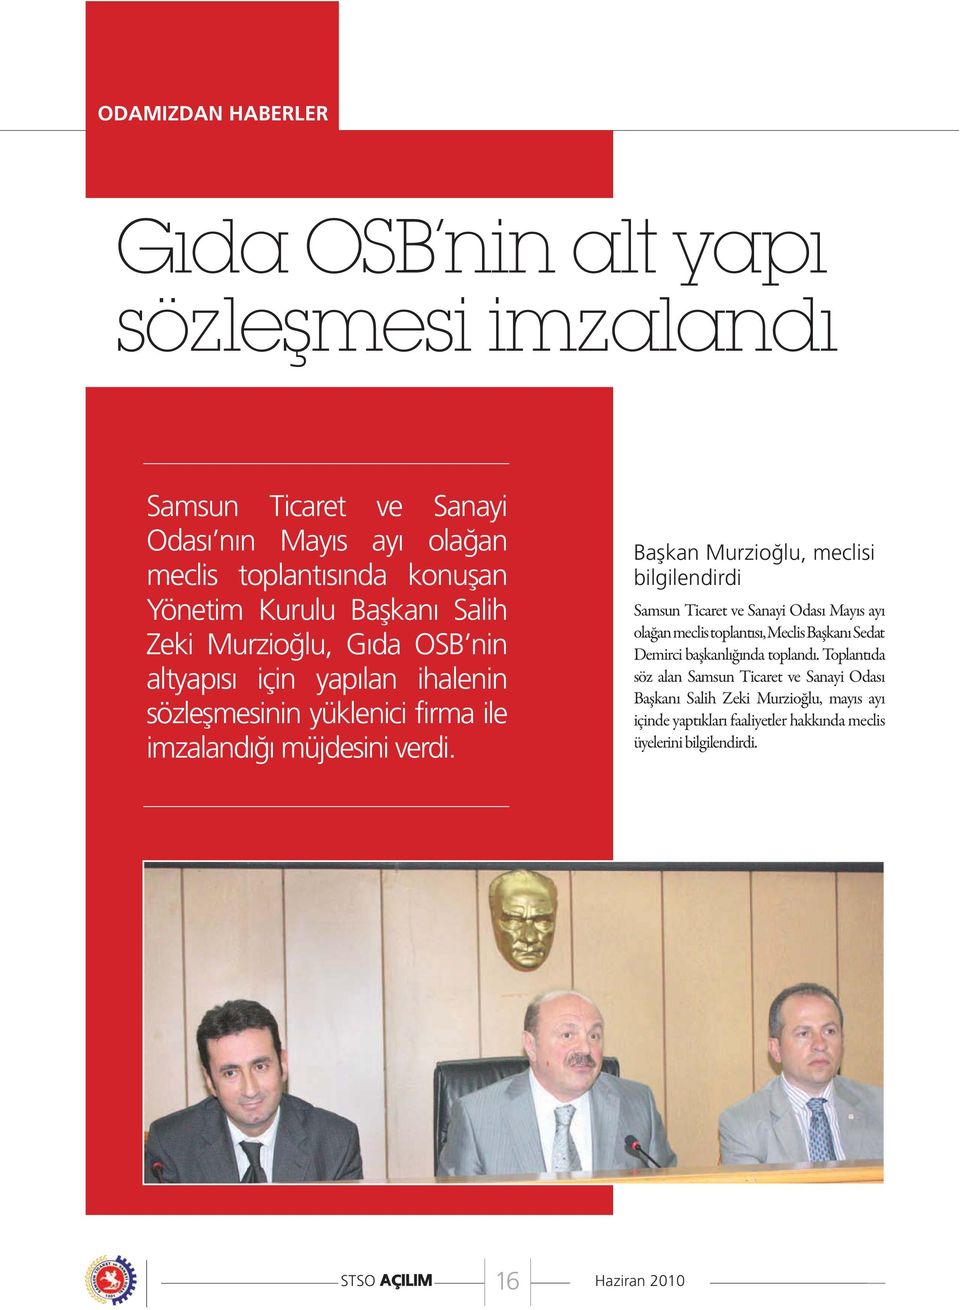 Başkan Murzioğlu, meclisi bilgilendirdi Samsun Ticaret ve Sanayi Odası Mayıs ayı olağan meclis toplantısı, Meclis Başkanı Sedat Demirci başkanlığında toplandı.